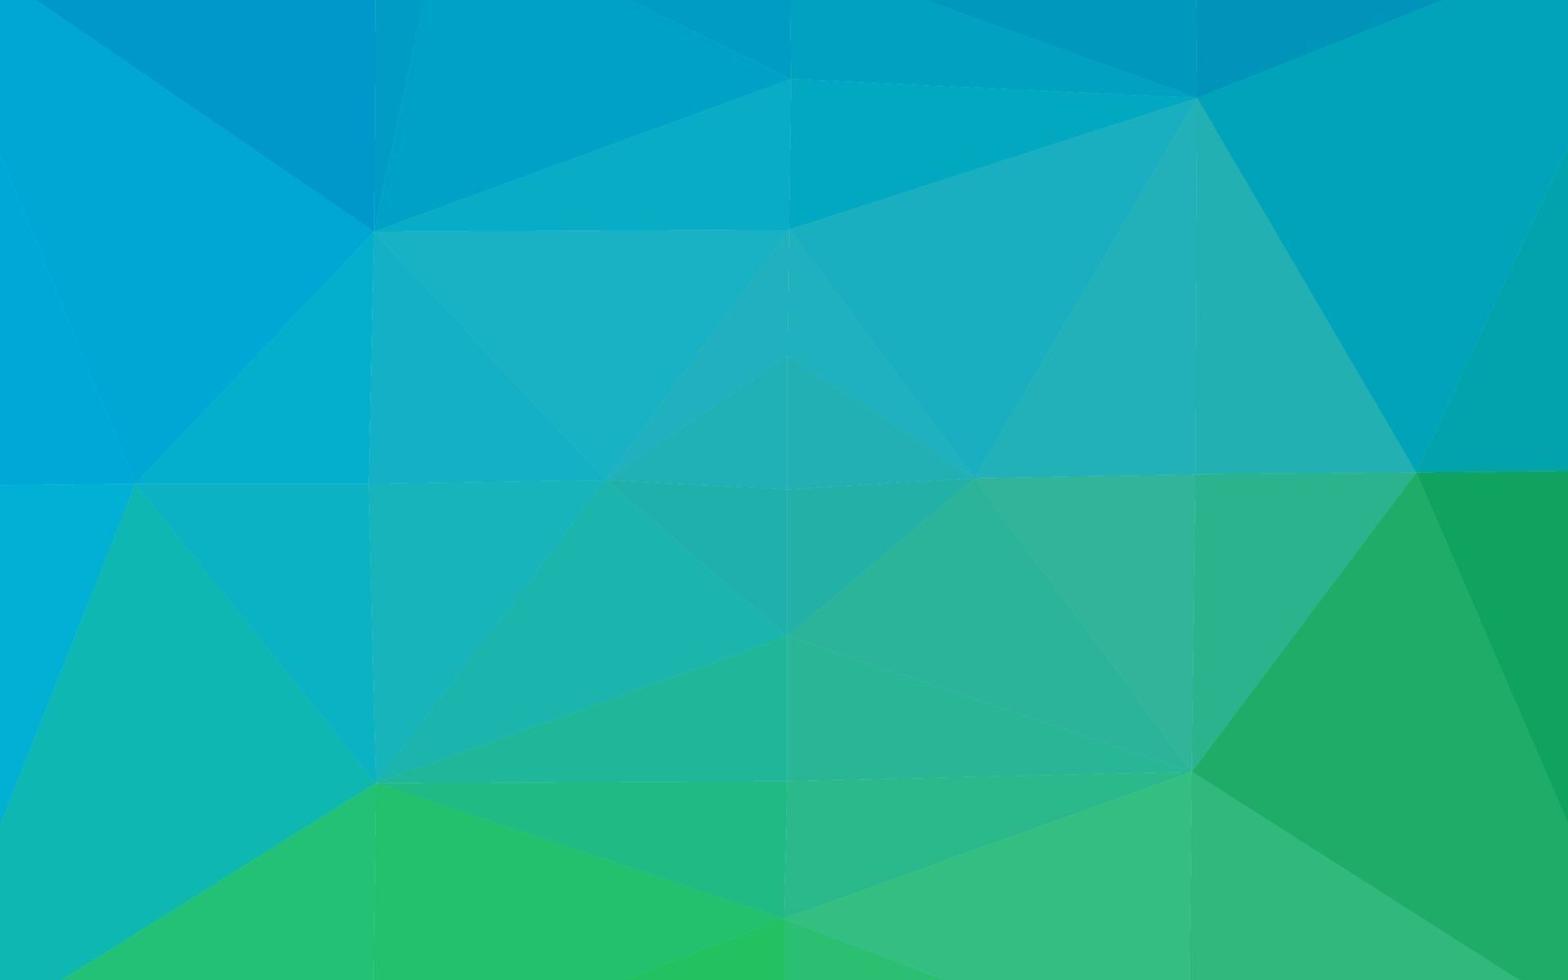 sfondo astratto poligono vettoriale azzurro, verde.